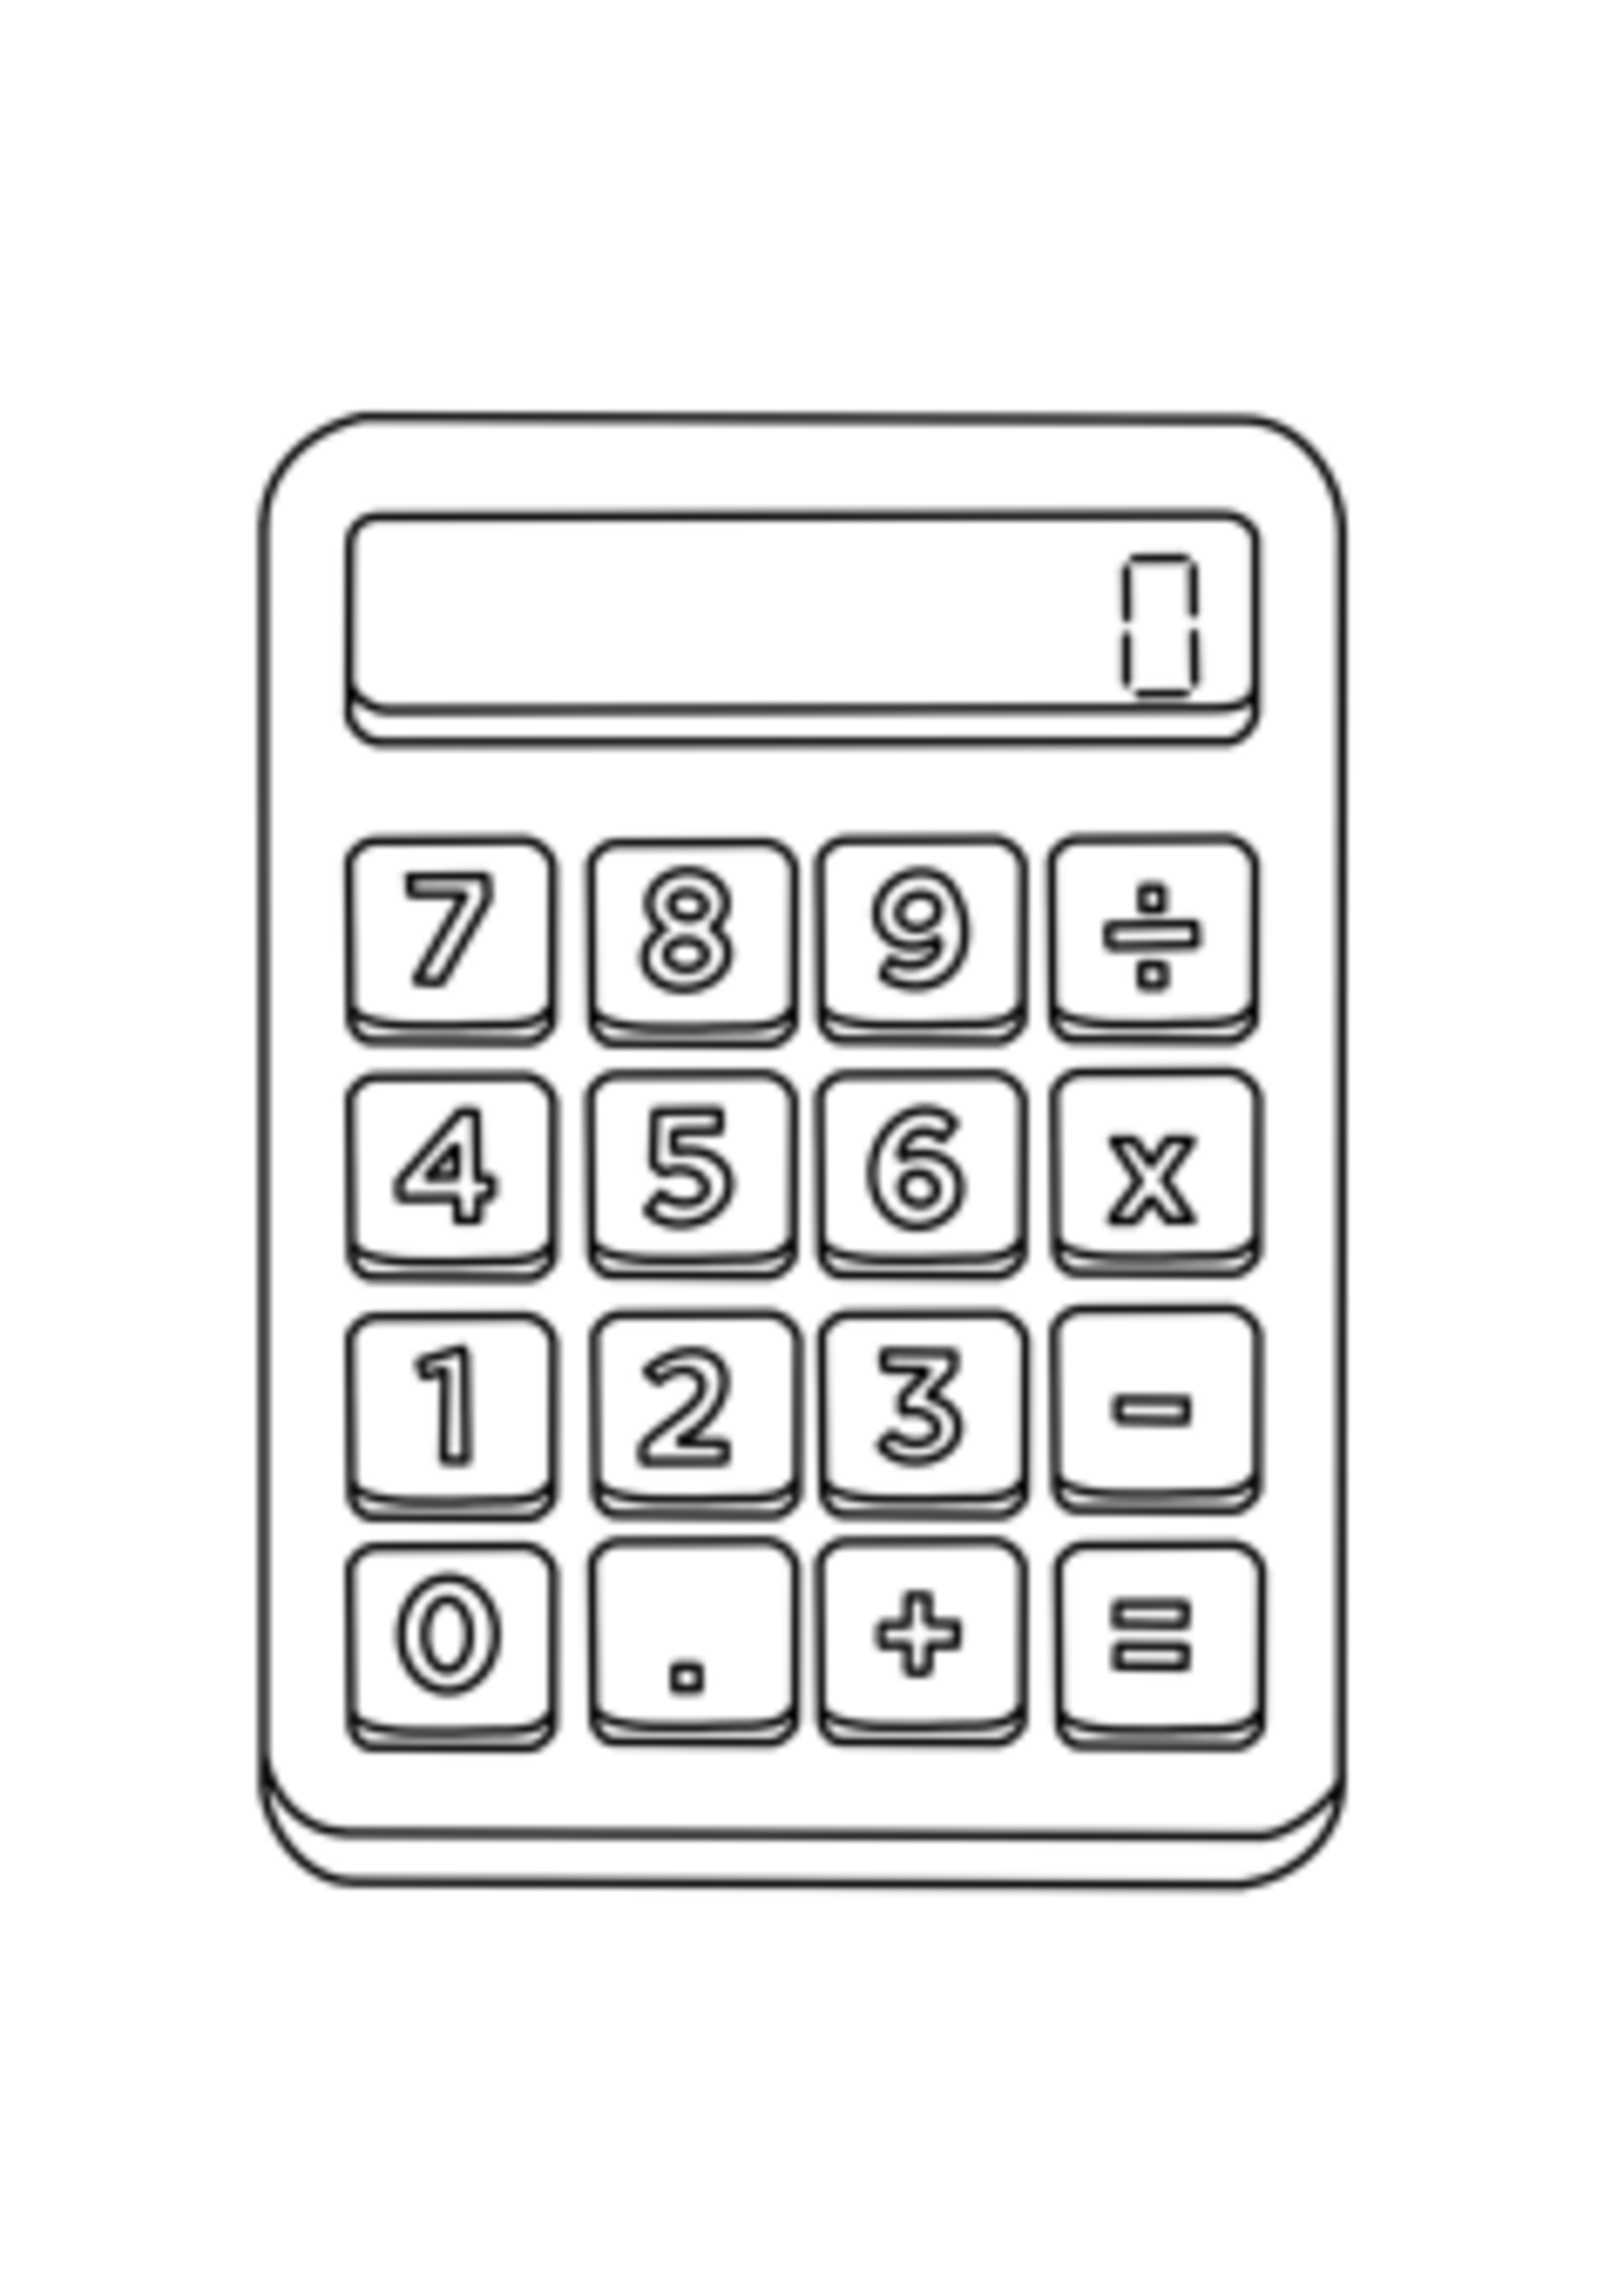 NON-UNIFORM CALCULATOR - Cheer Kiosk Calculator